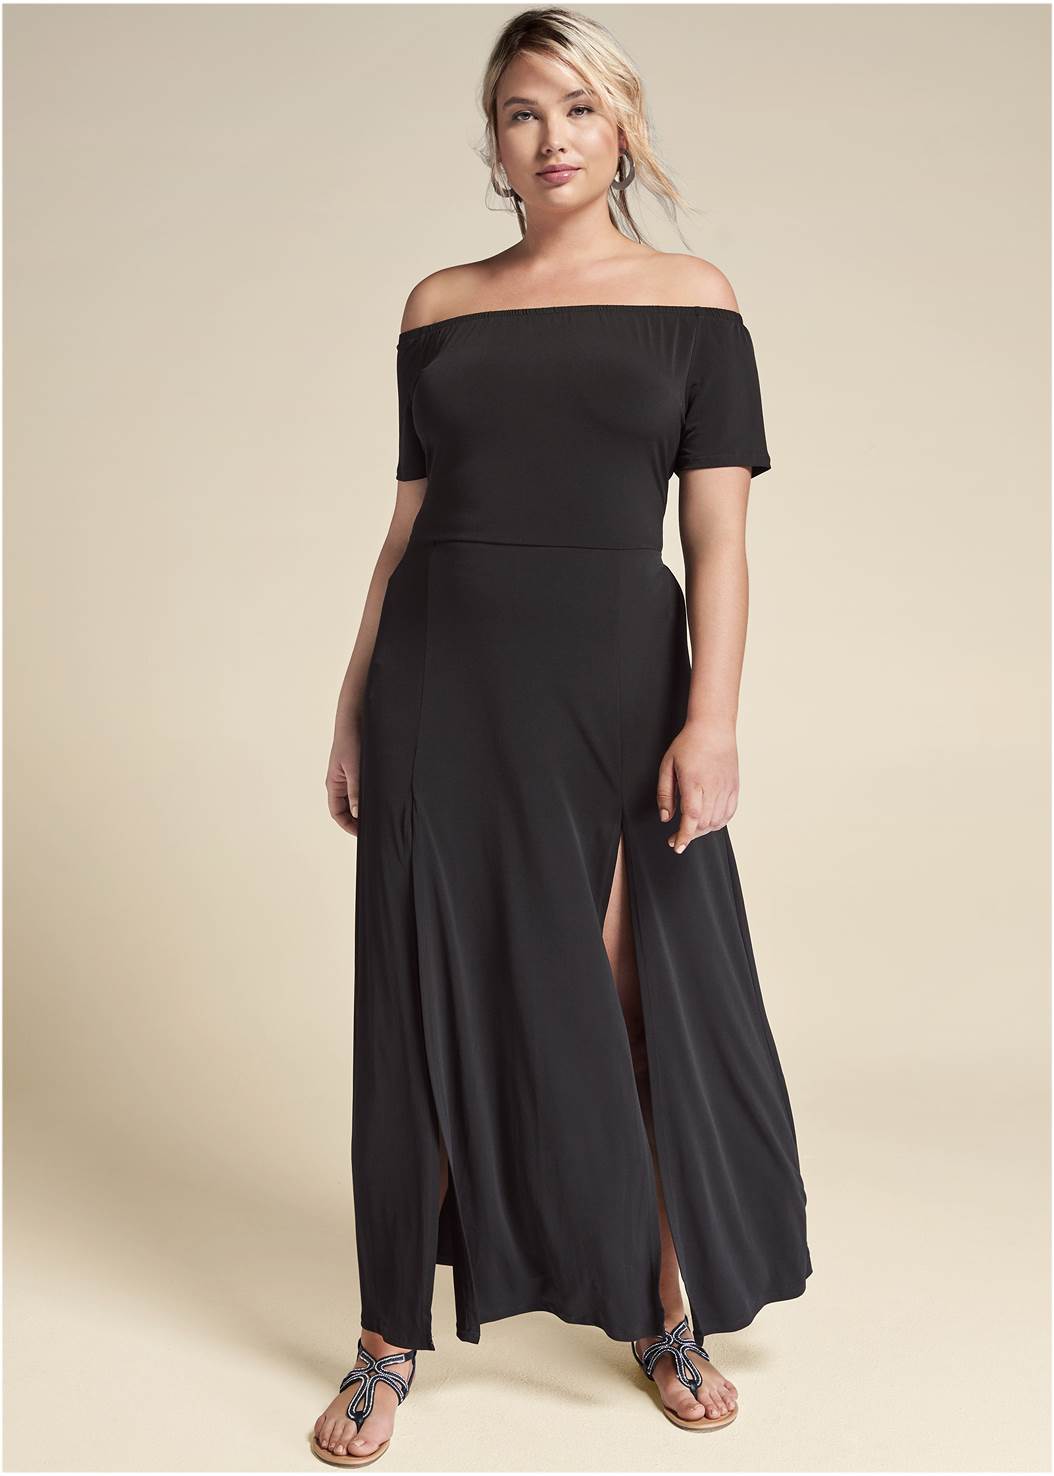 Slit Detail Maxi Dress in Black | VENUS